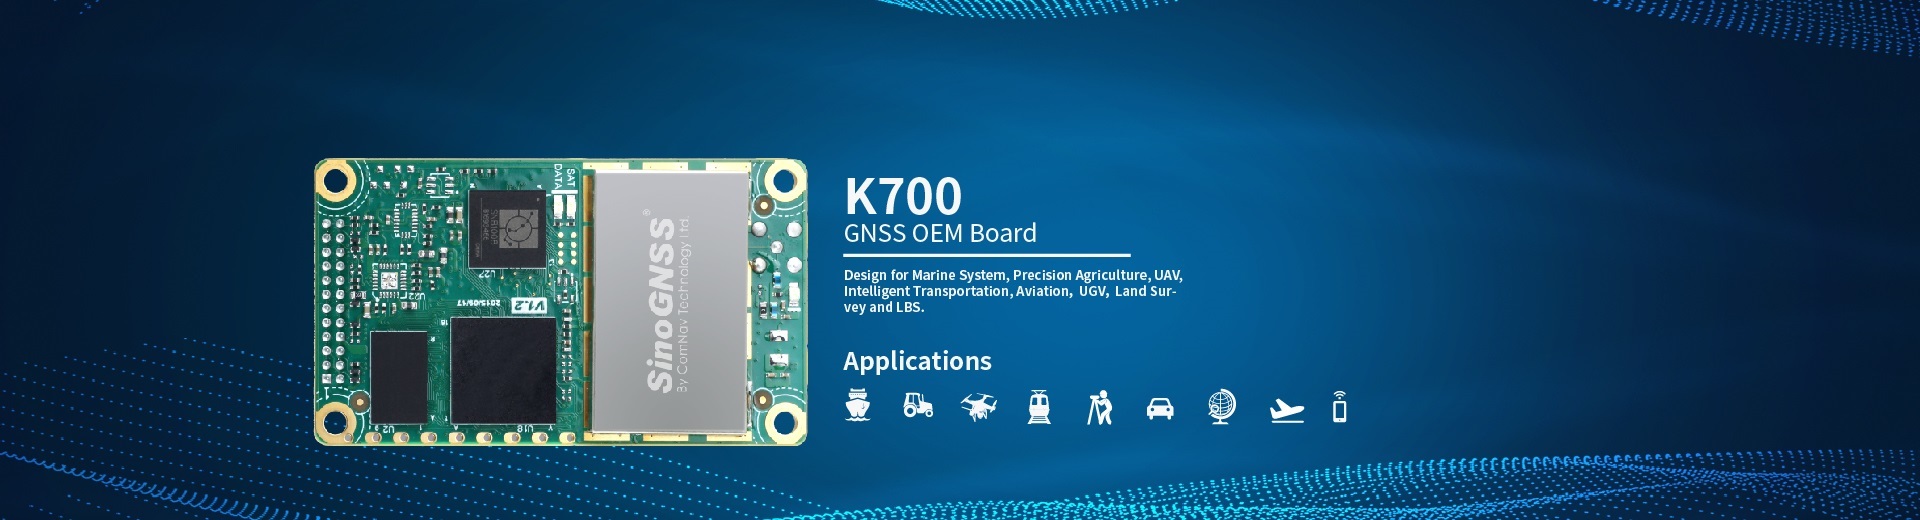 K700 GNSS OEM Board (EOL)